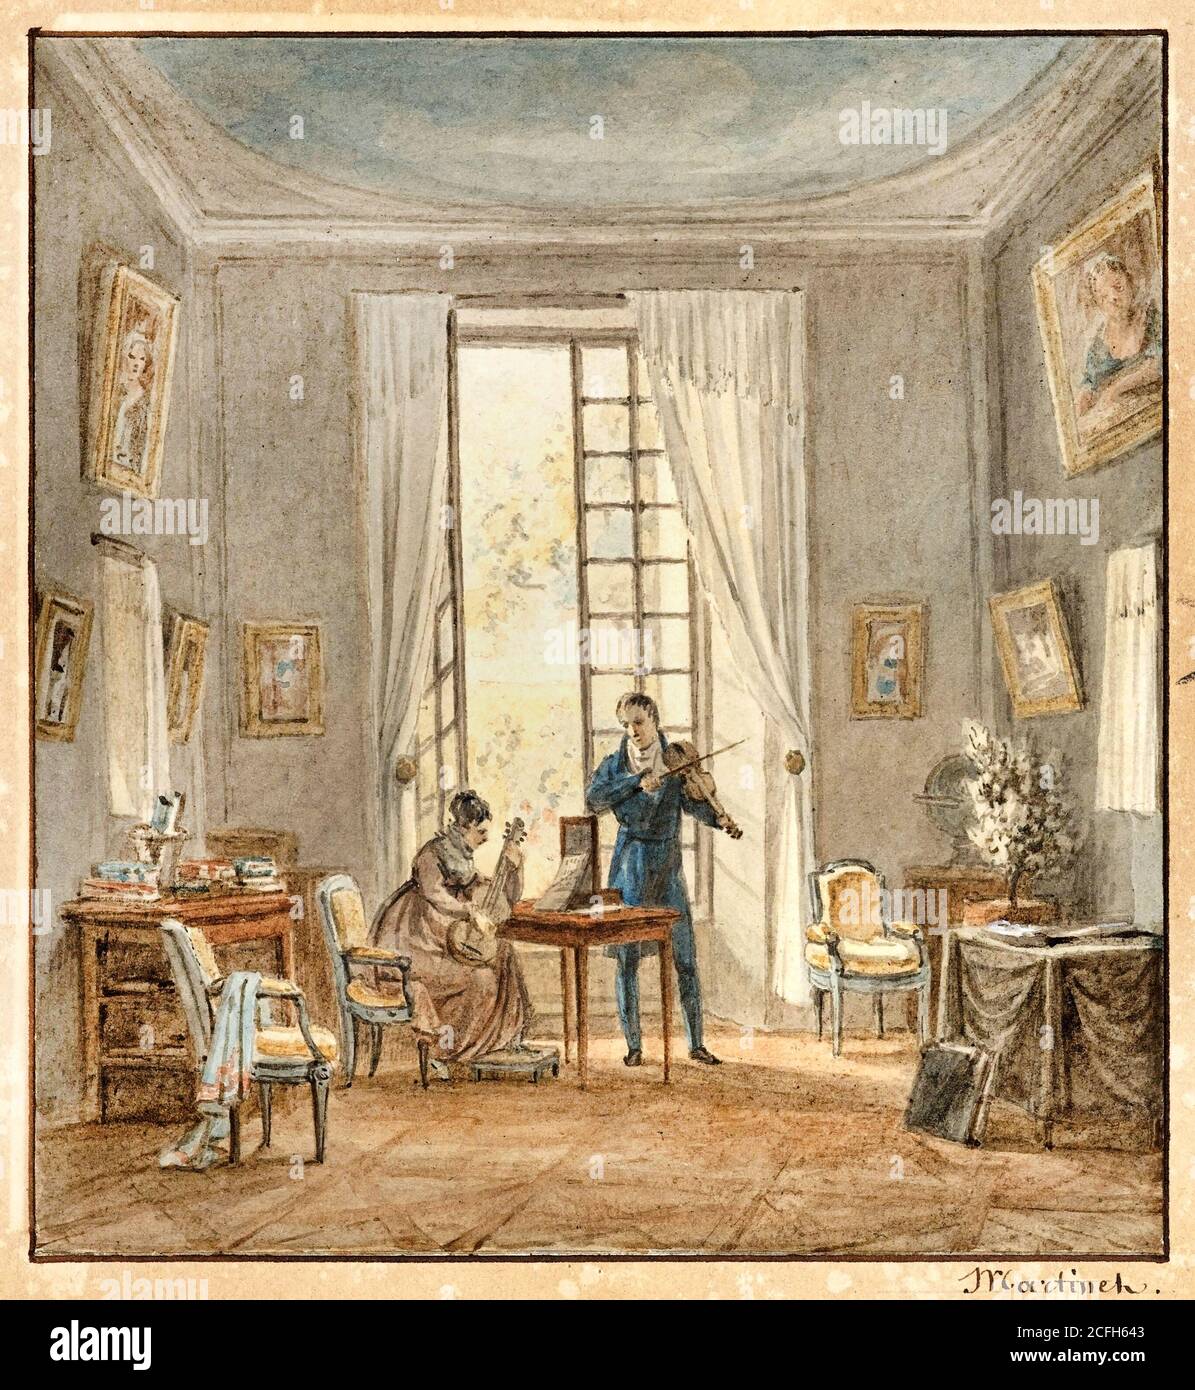 Achille-Louis Martinet, Salone interno con Gabriel d'Arjuzon giocando il violino e Pascale Hosten, Comtess d'Arjuzon, Playing Guitar, circa 1840, B. Foto Stock